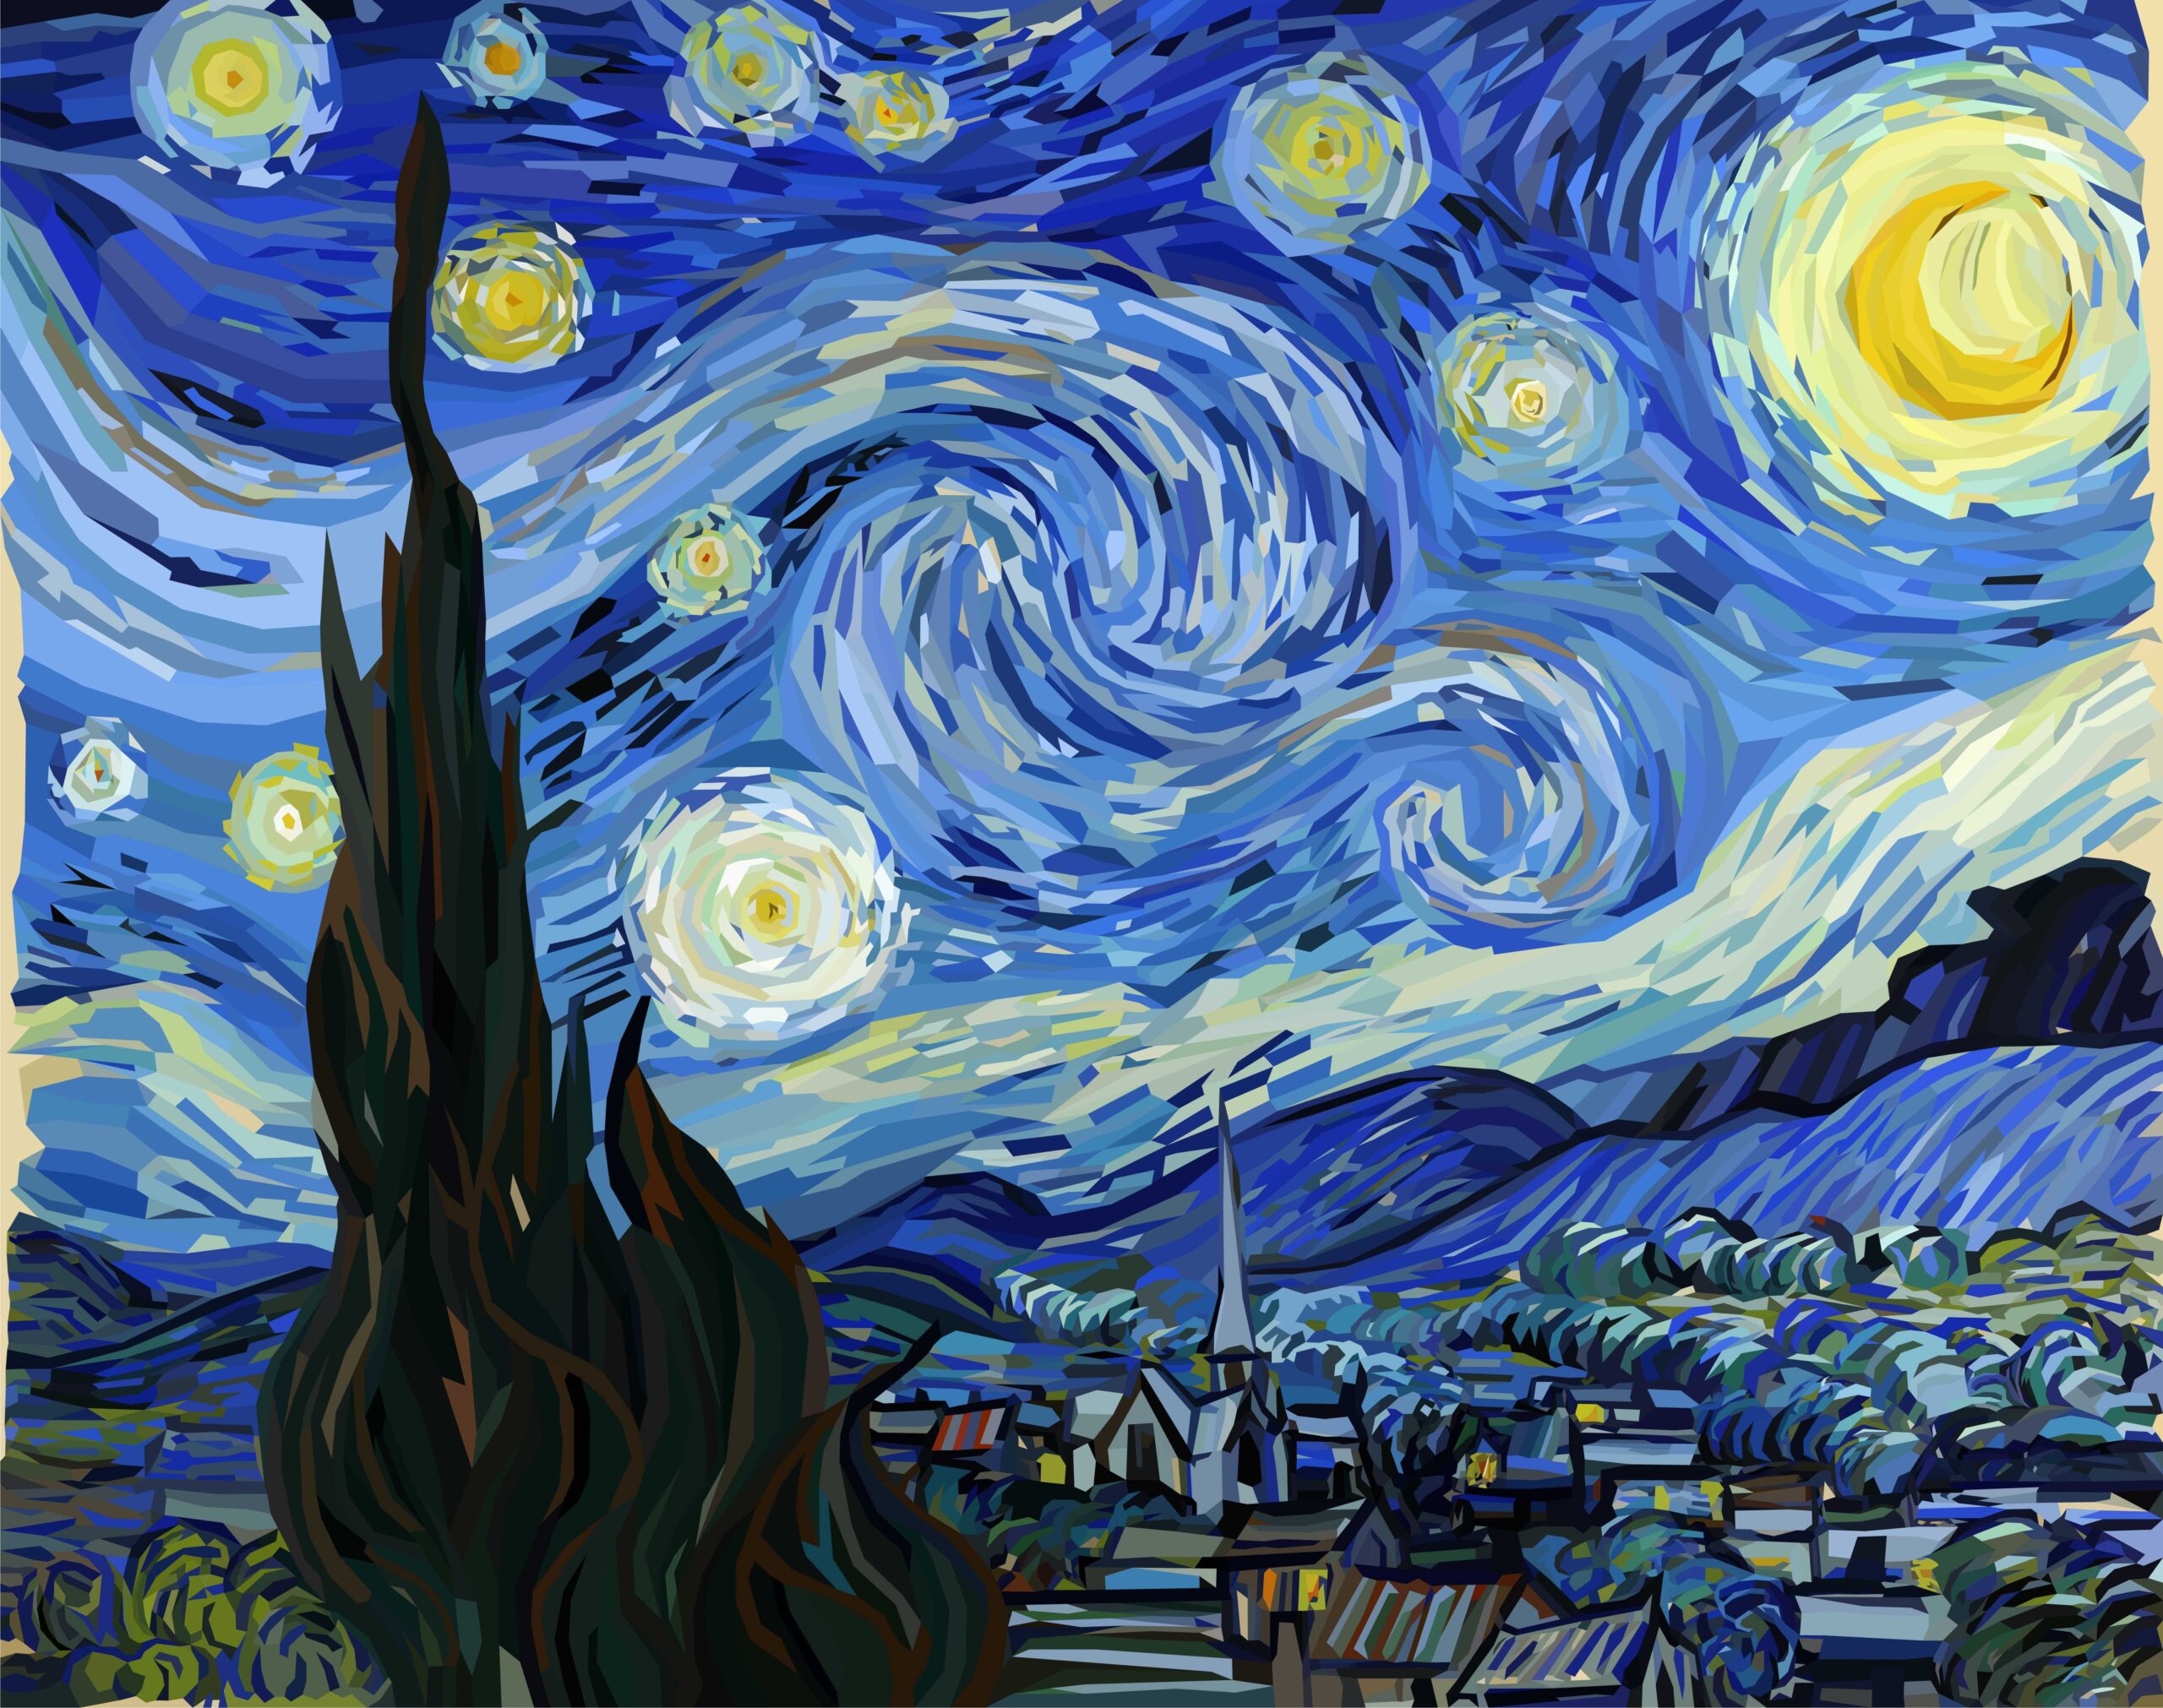 Van Gogh's Stary Night painting